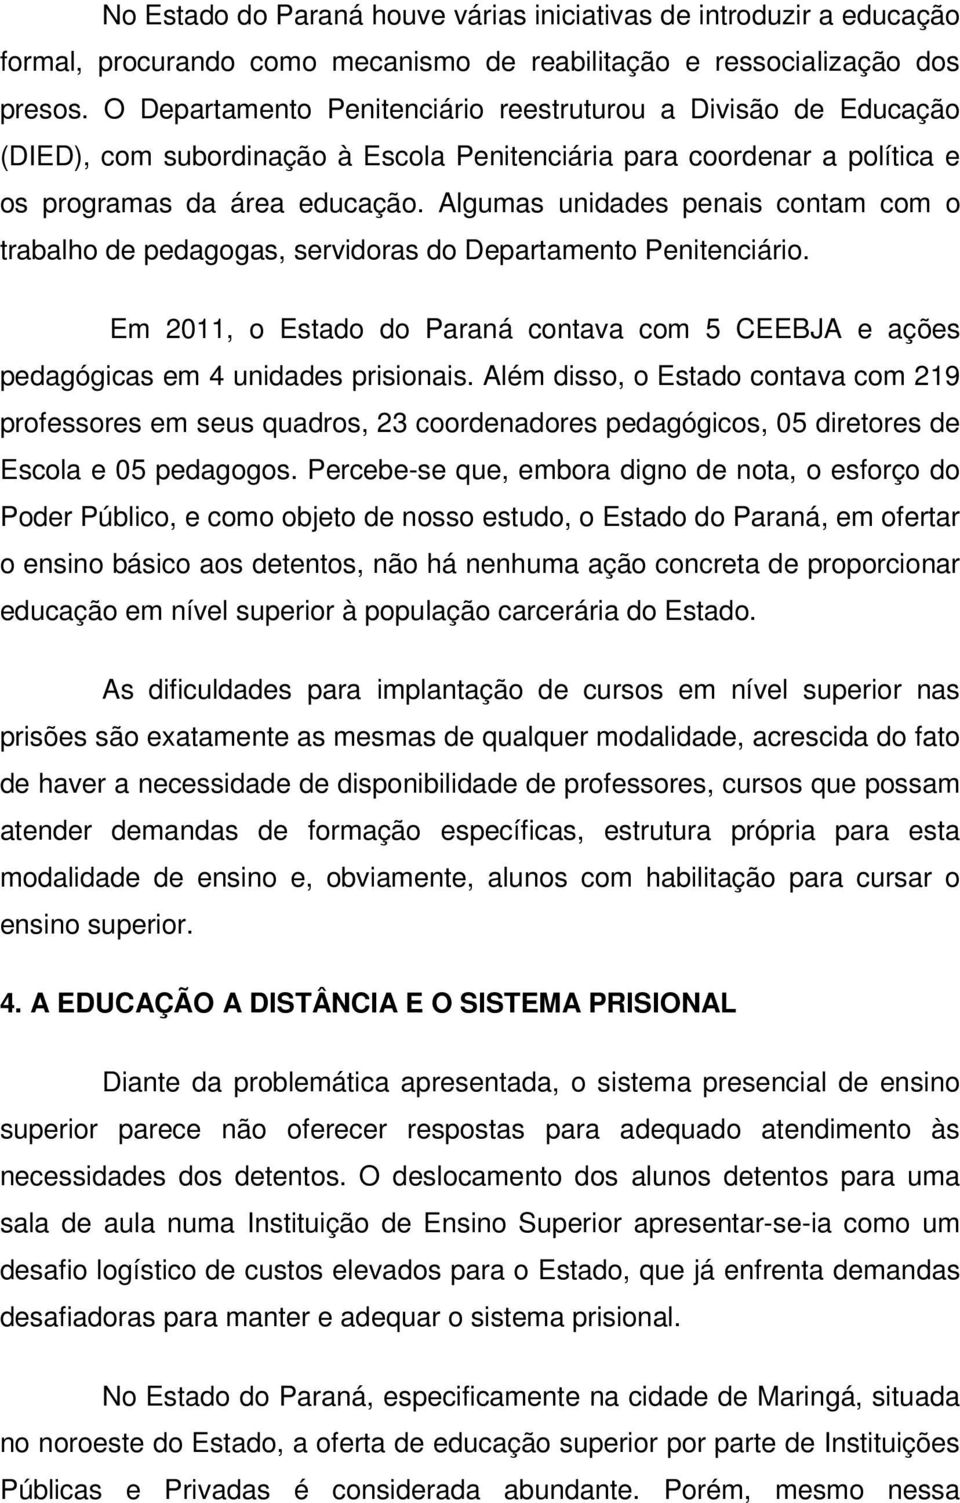 Algumas unidades penais contam com o trabalho de pedagogas, servidoras do Departamento Penitenciário. Em 2011, o Estado do Paraná contava com 5 CEEBJA e ações pedagógicas em 4 unidades prisionais.